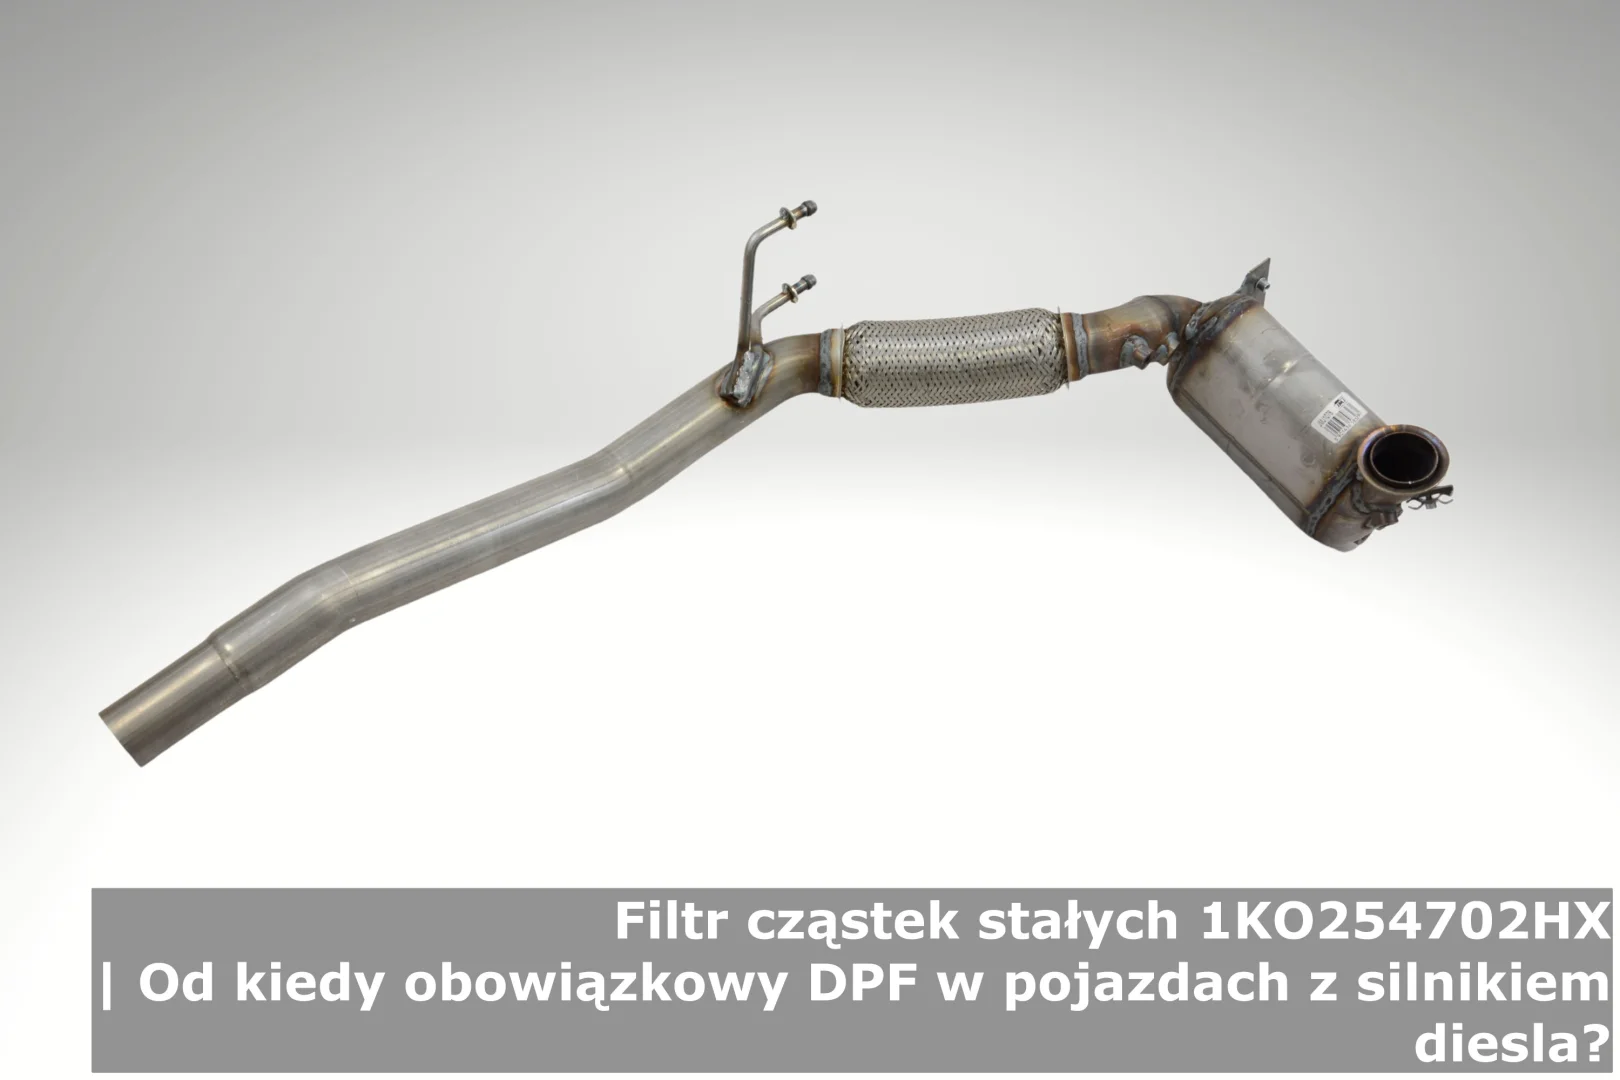 Filtr cząstek stałych 1KO254702HX | Od kiedy obowiązkowy DPF w pojazdach z silnikiem diesla?